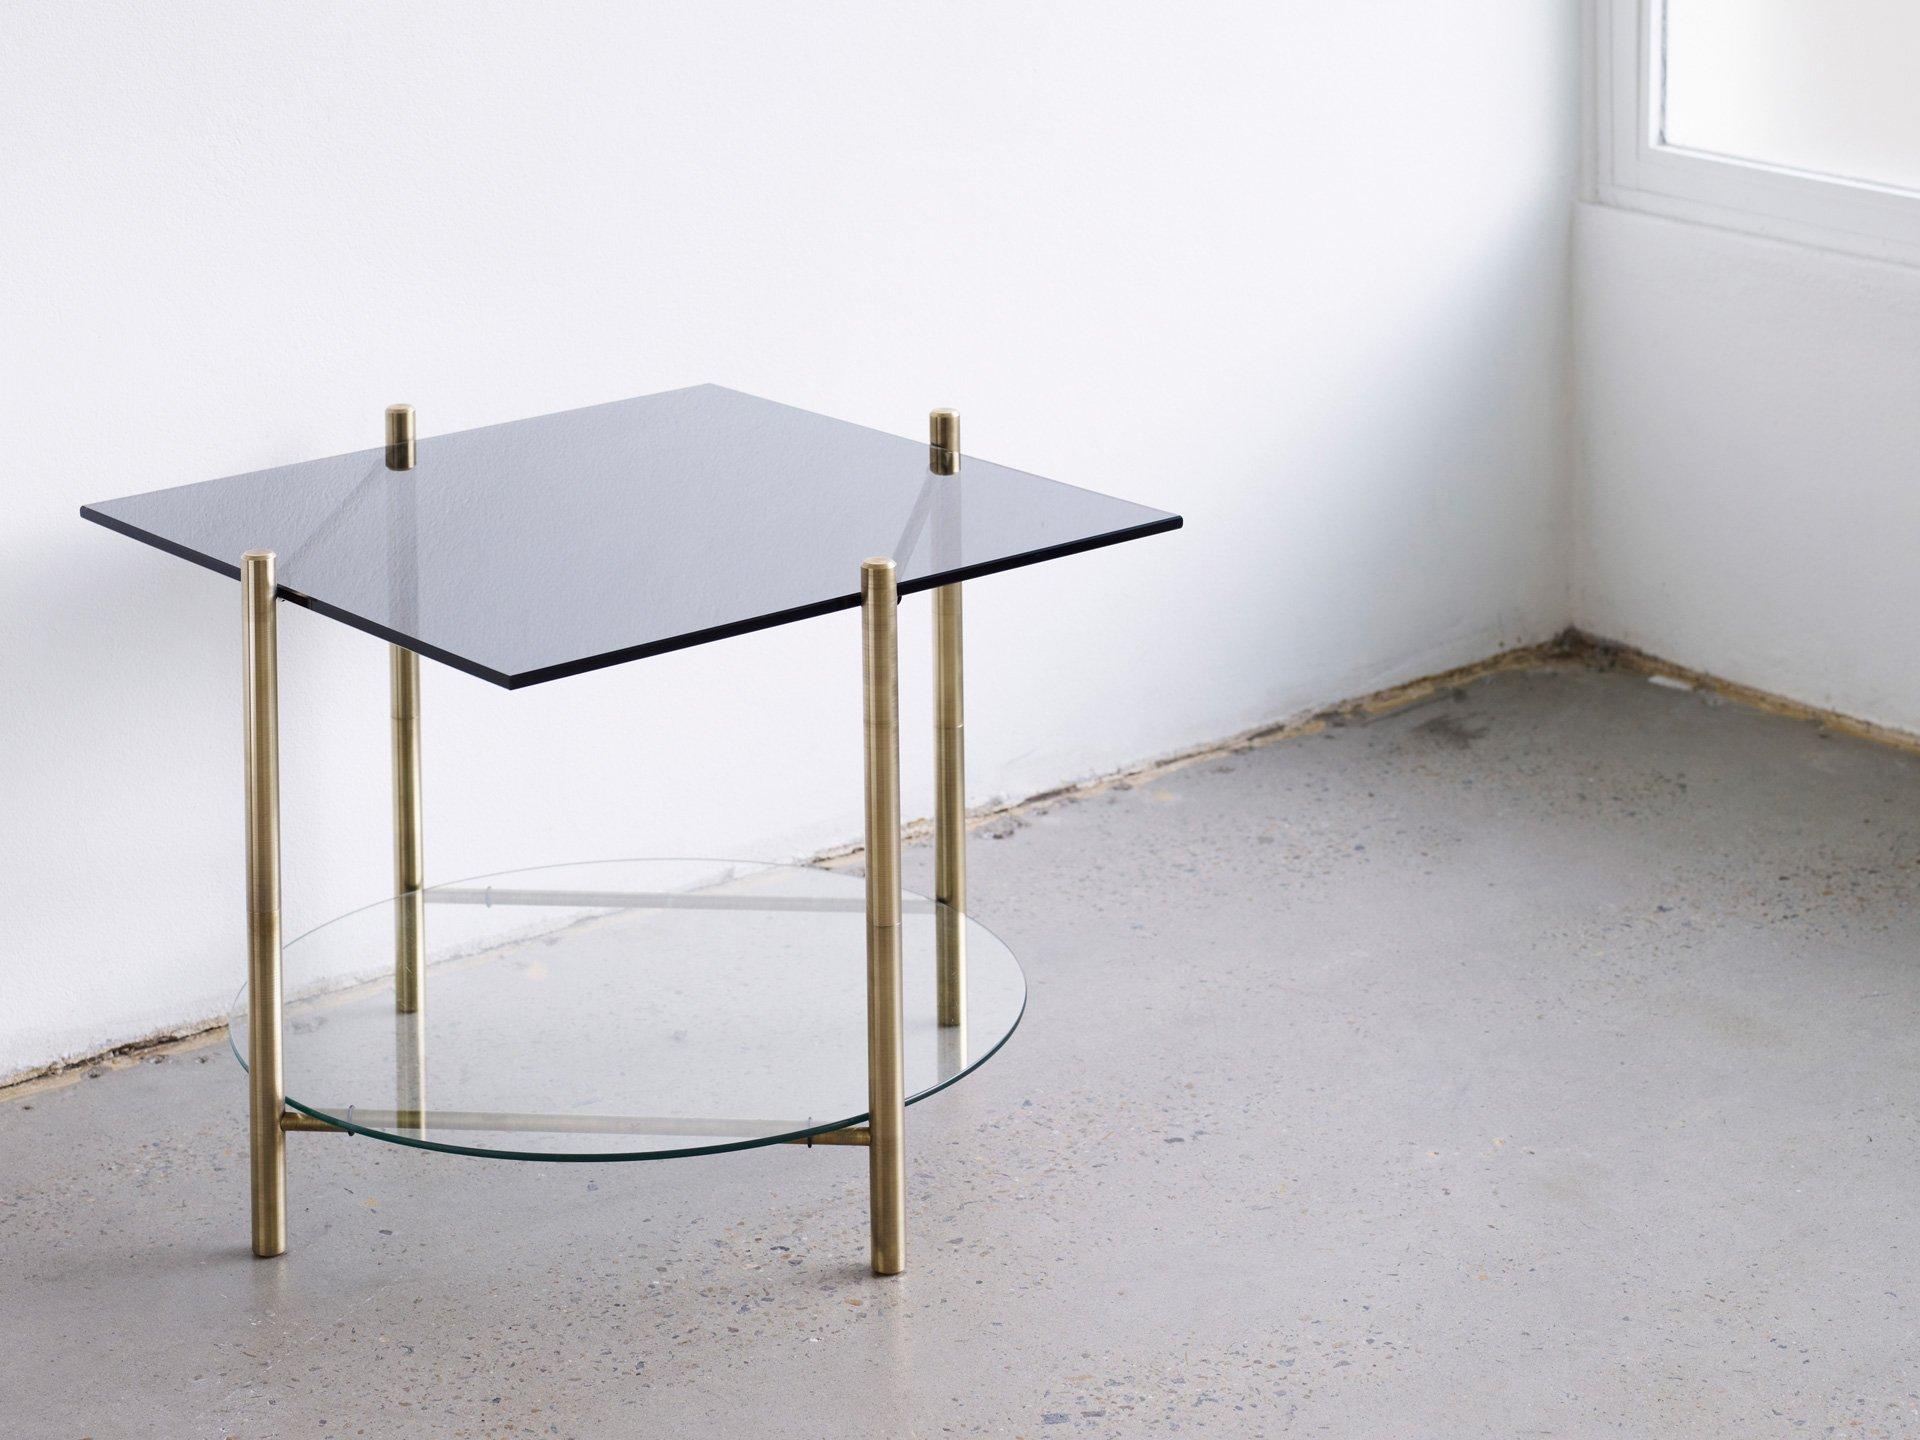 Couchtisch von Henry Wilson
Quadratischer Tisch/runder Tisch

Massiver Messingrahmen mit zweistufigen Oberflächen. Alle Tische werden auf Bestellung aus den vom Kunden angegebenen Materialien hergestellt. Einige Möglichkeiten sind: Steinsorten,